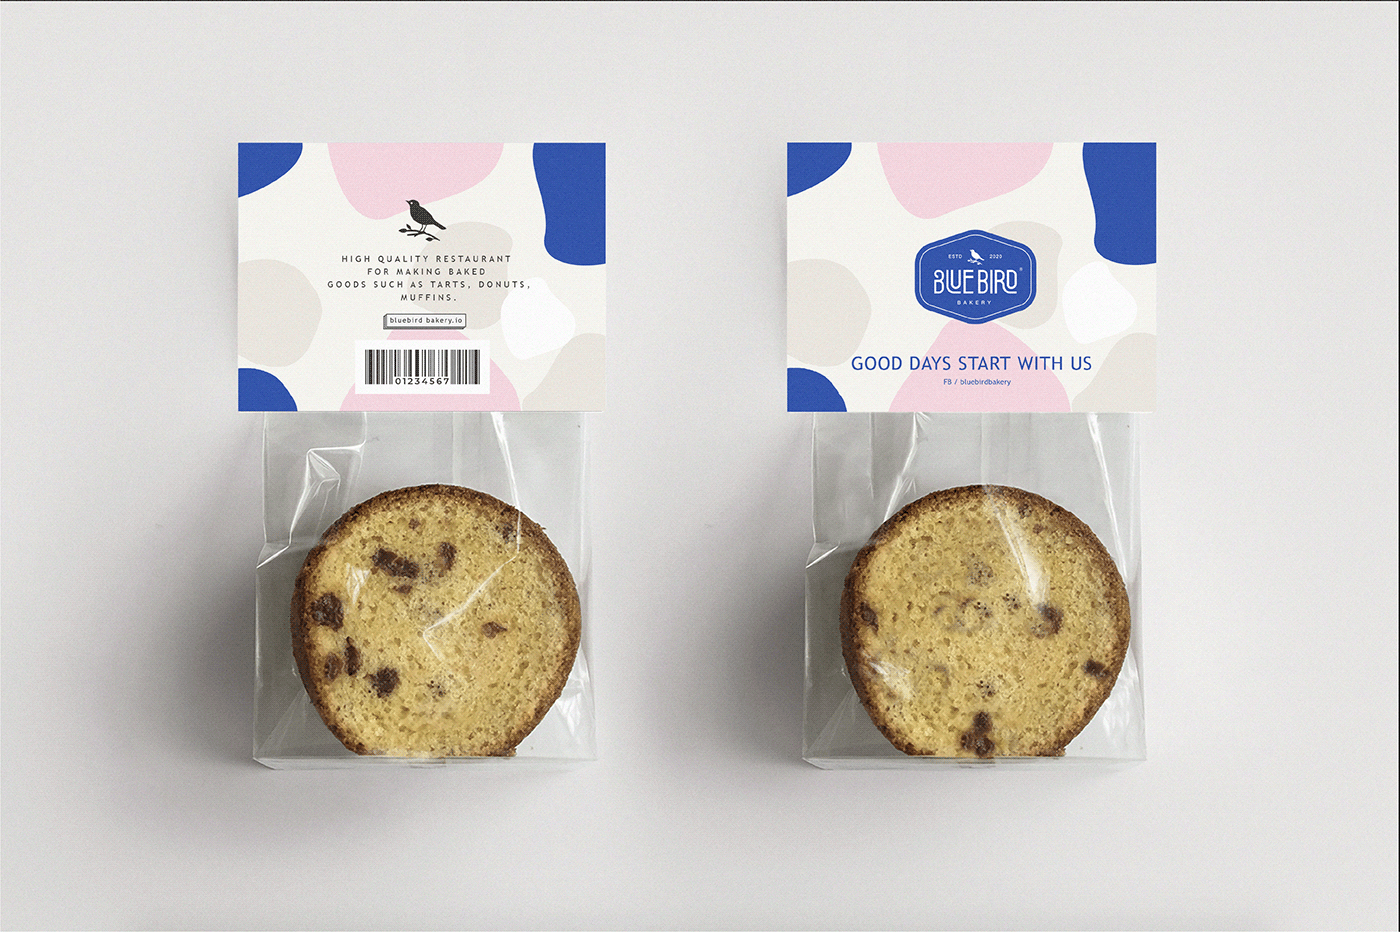 abstract bakery bird blue branding 